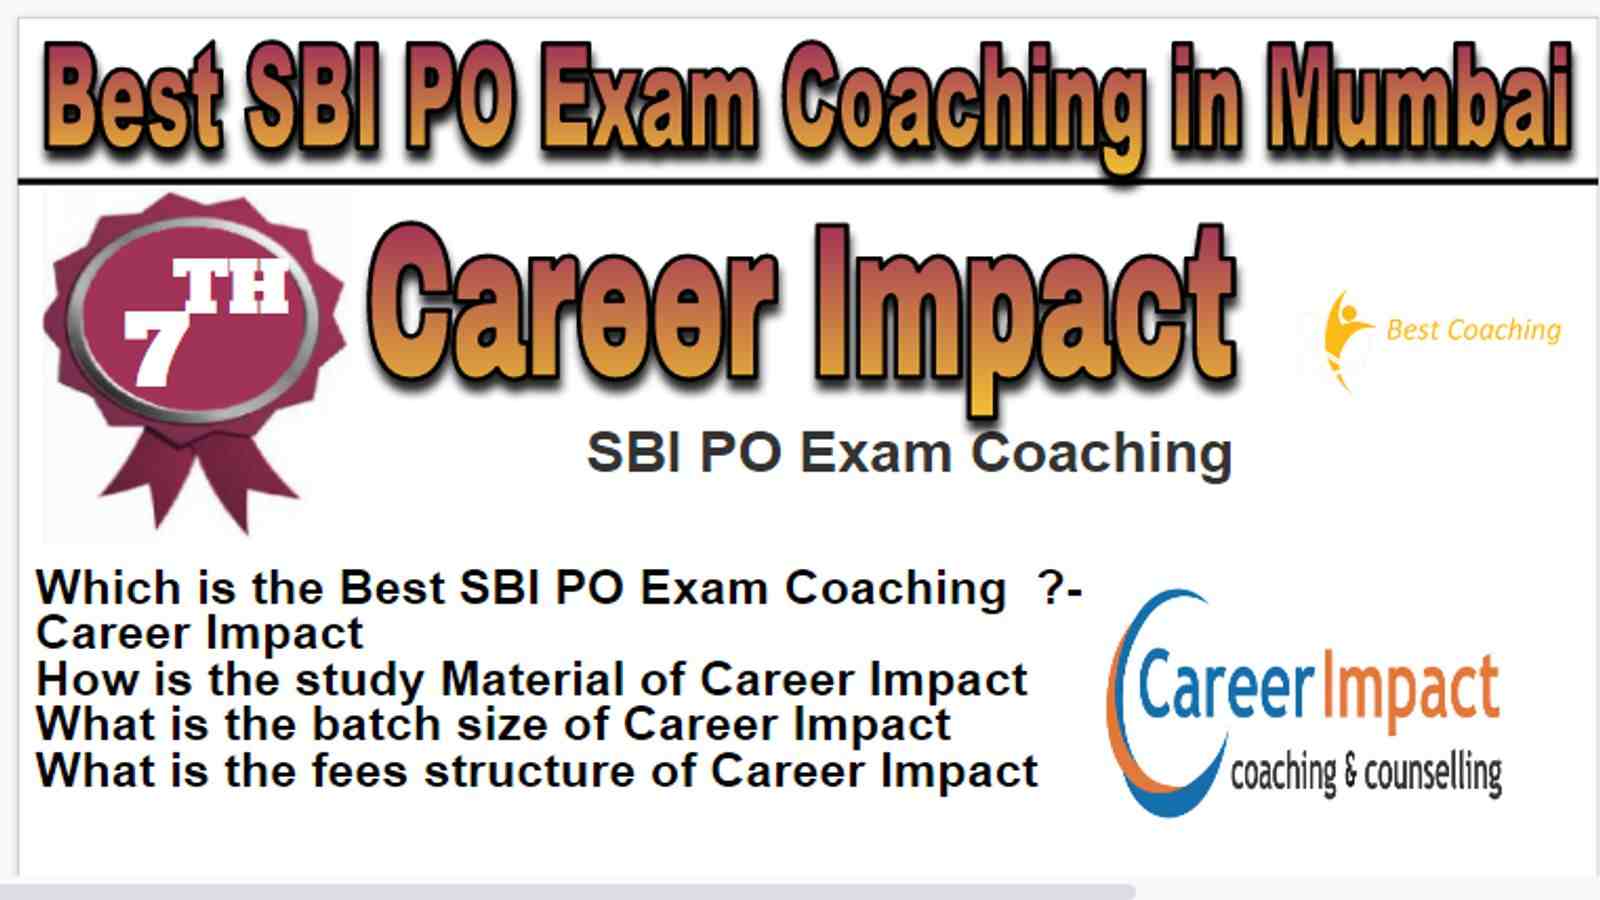 Rank 7 Best SBI PO Exam Coaching in Mumbai